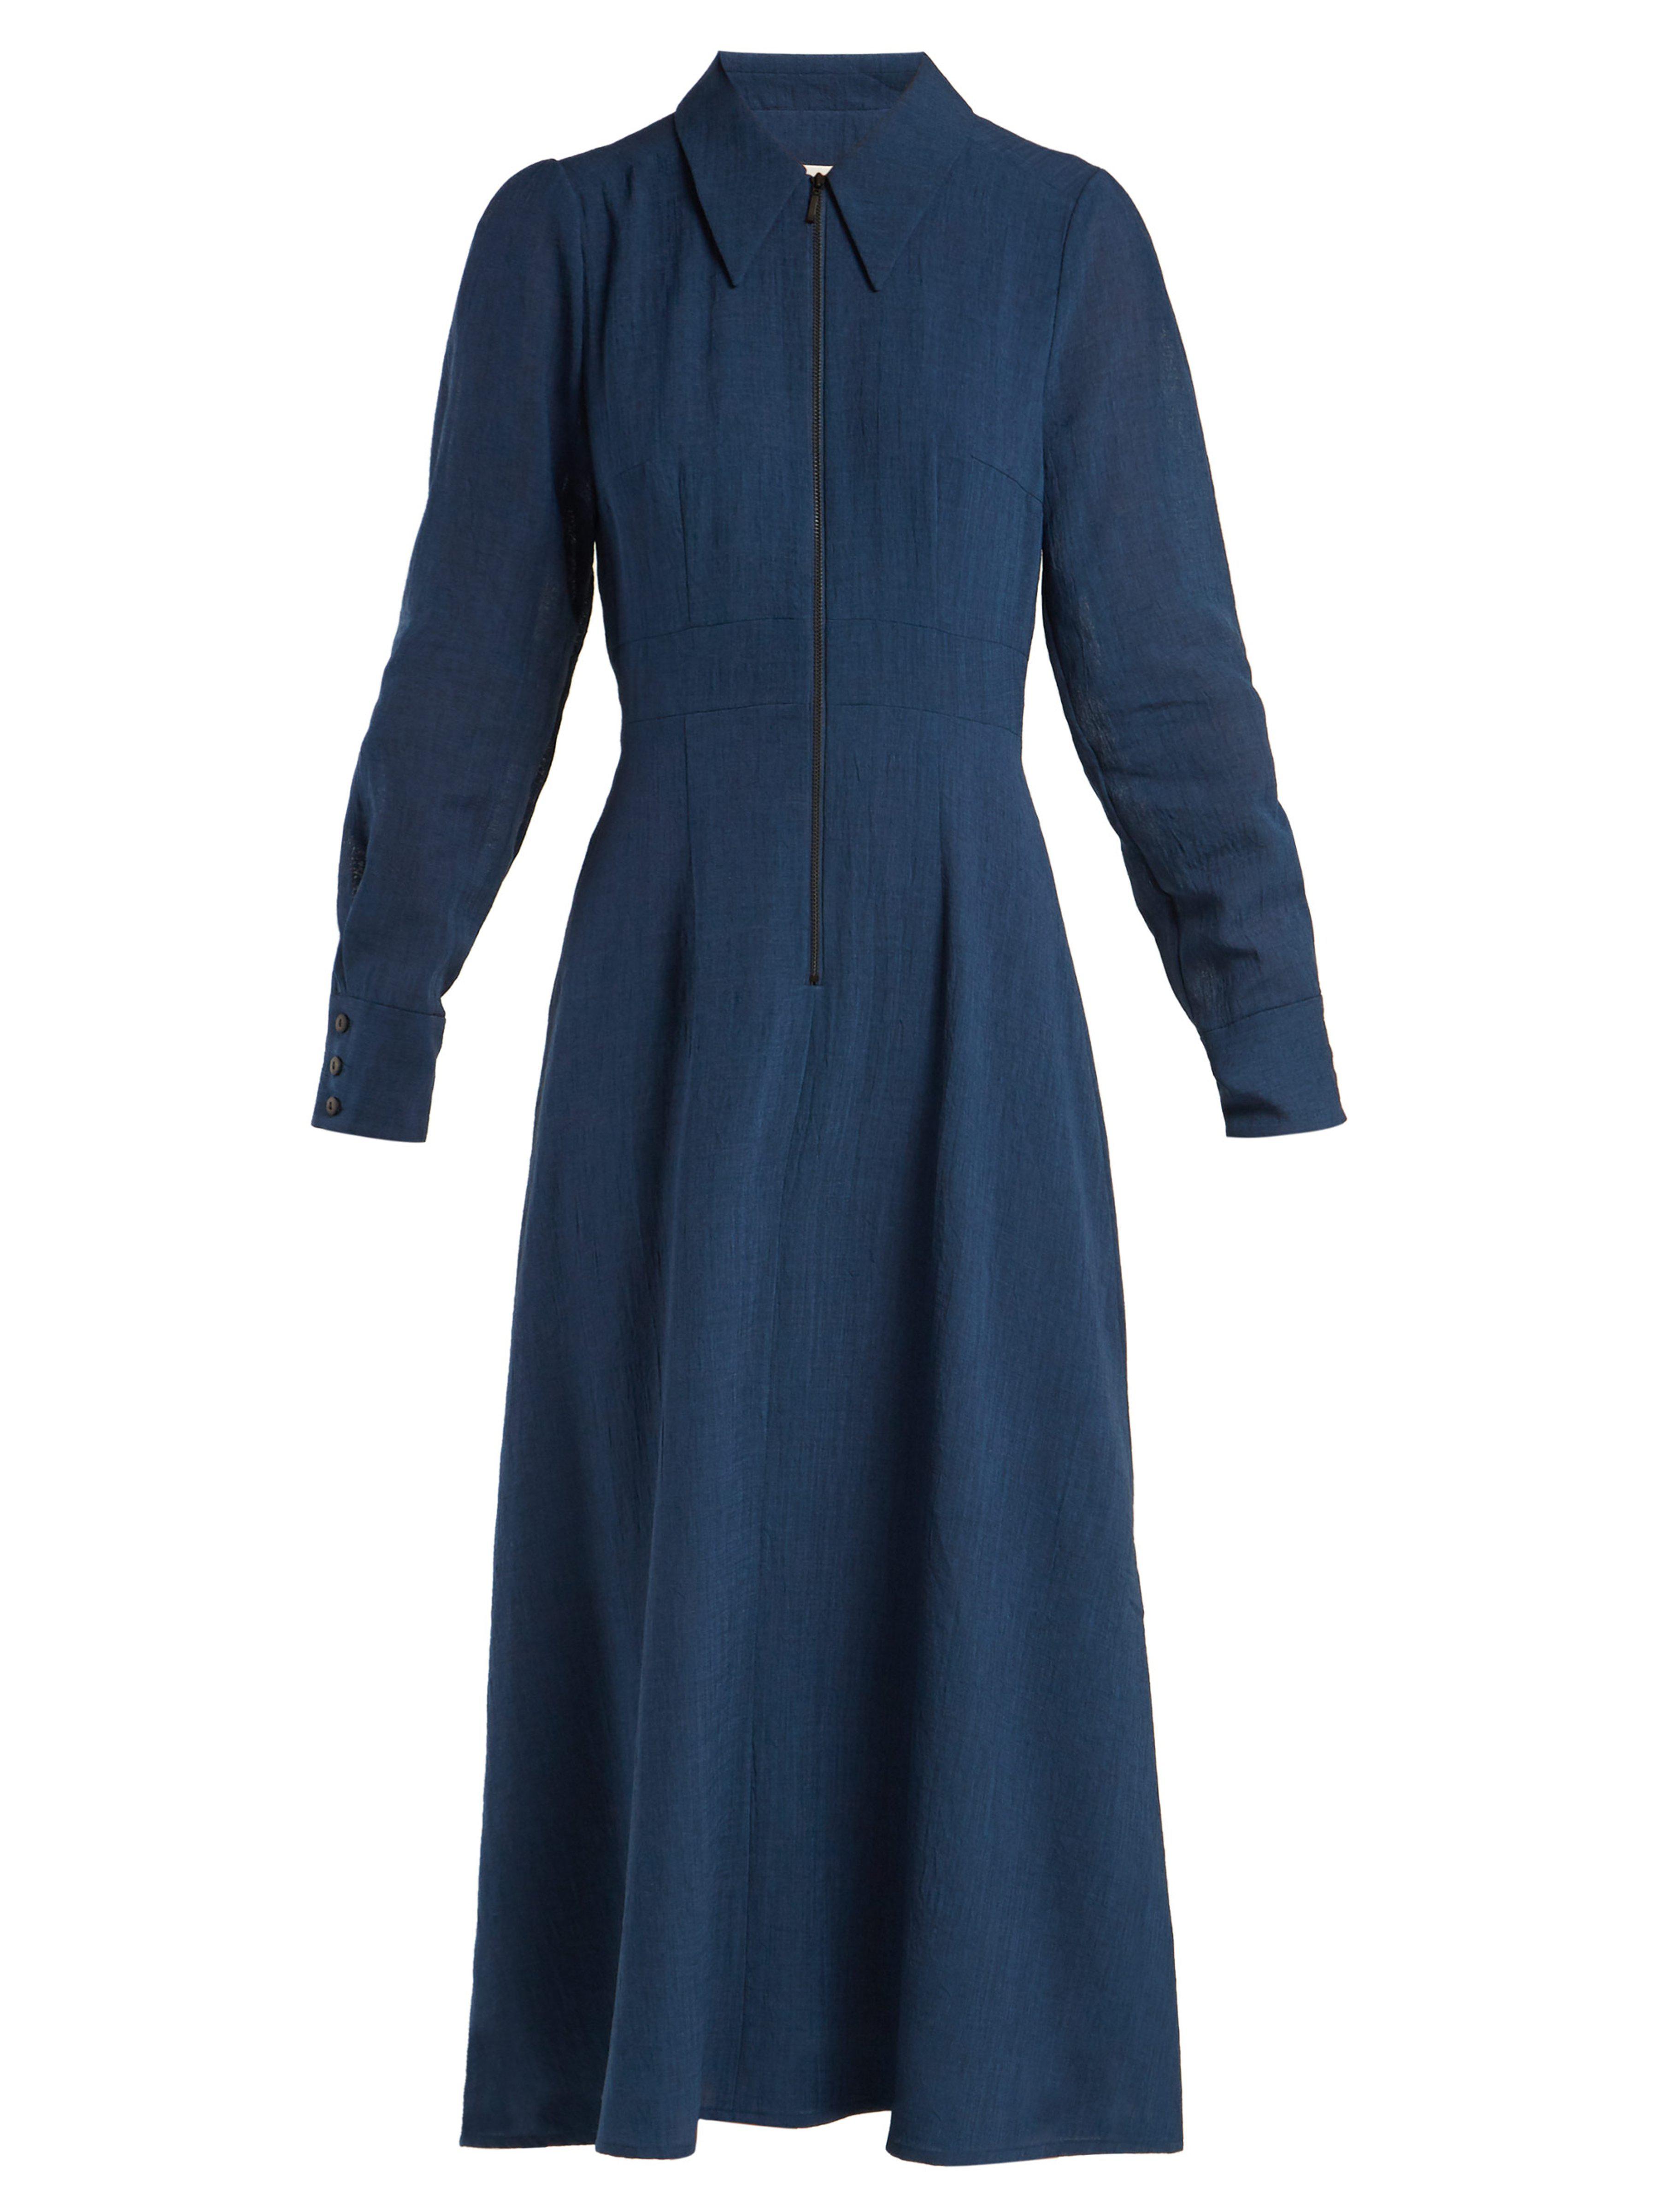 Cefinn Zip Front Voile Dress in Blue - Lyst